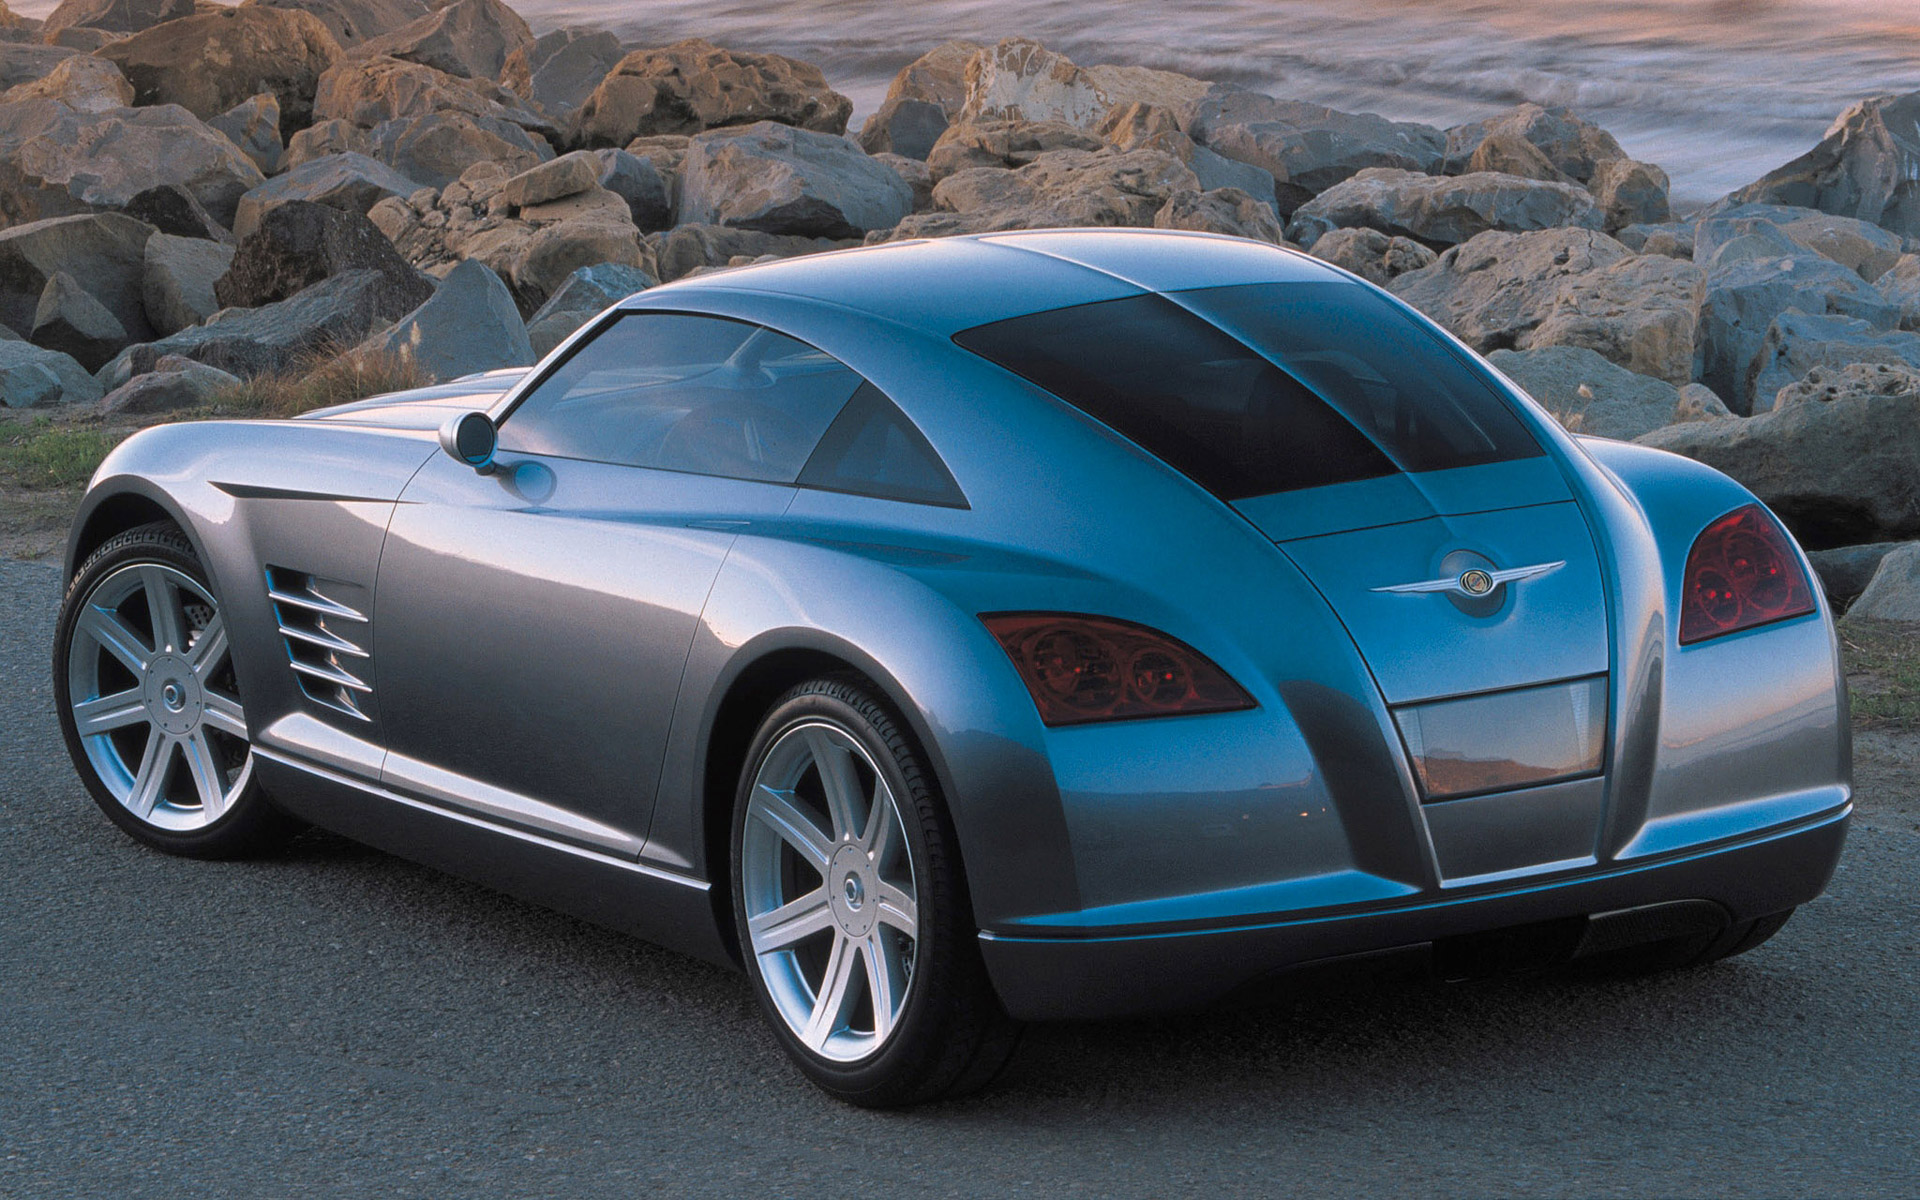  2001 Chrysler Crossfire Concept Wallpaper.